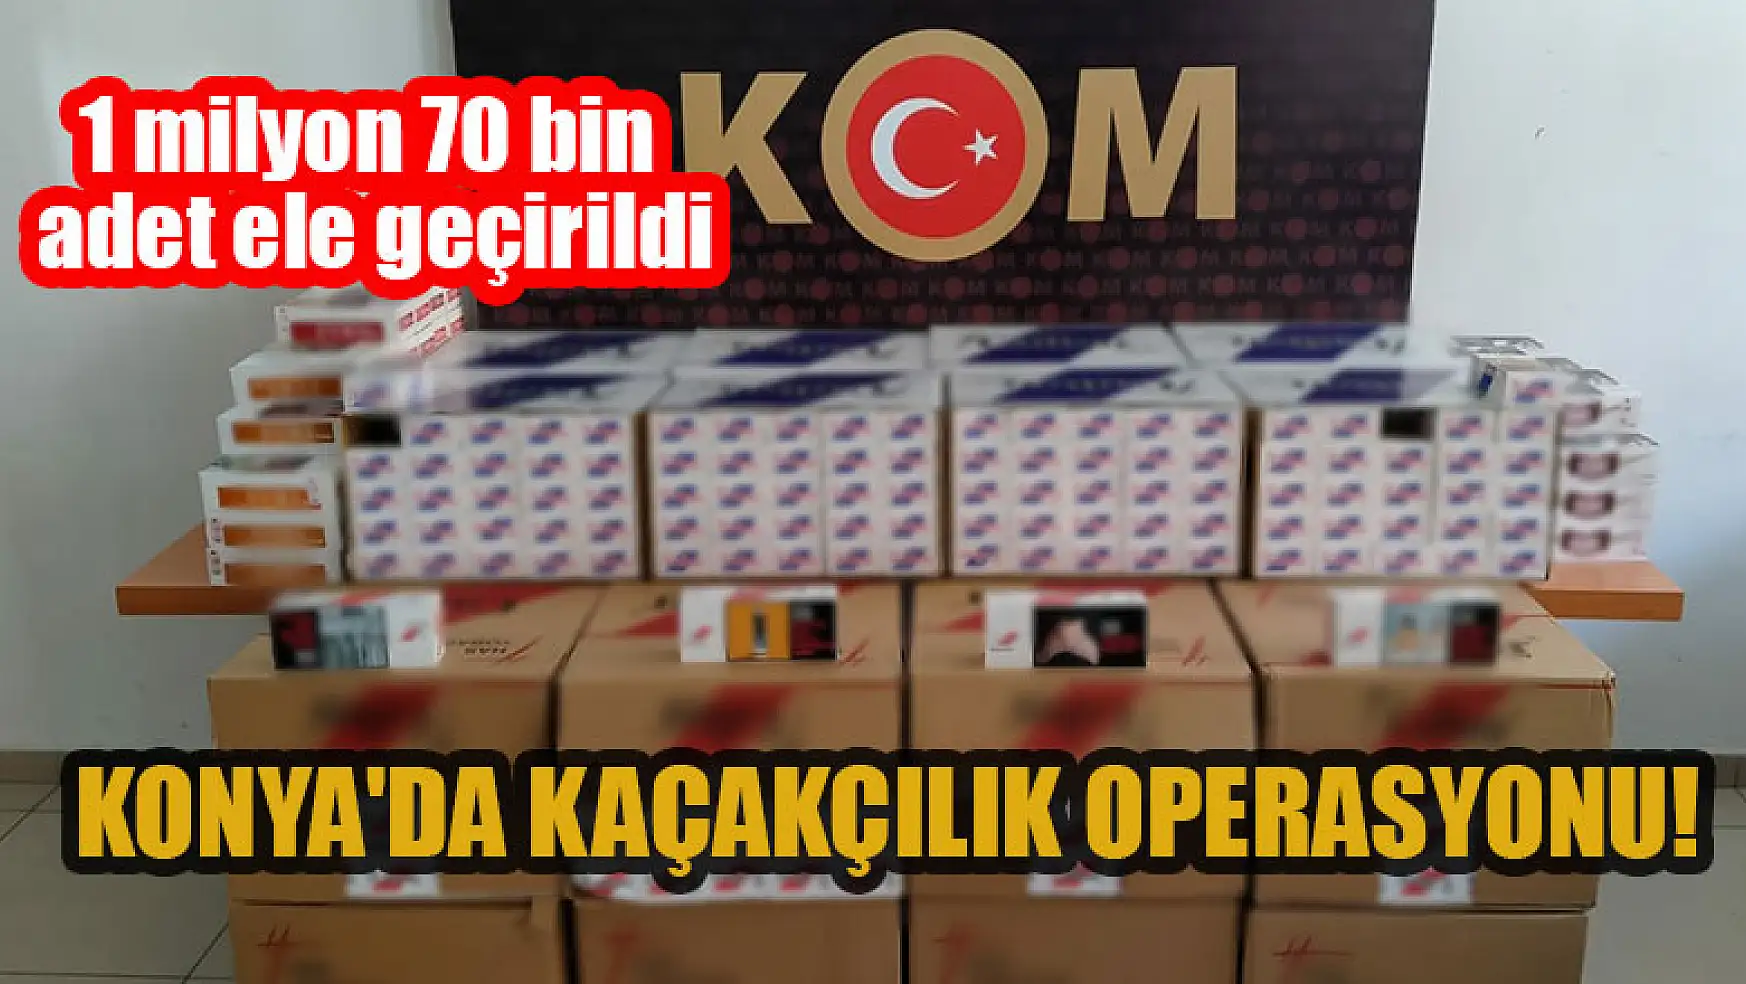 Konya'da kaçakçılık operasyonu: 1 milyon 70 bin adet ele geçirildi